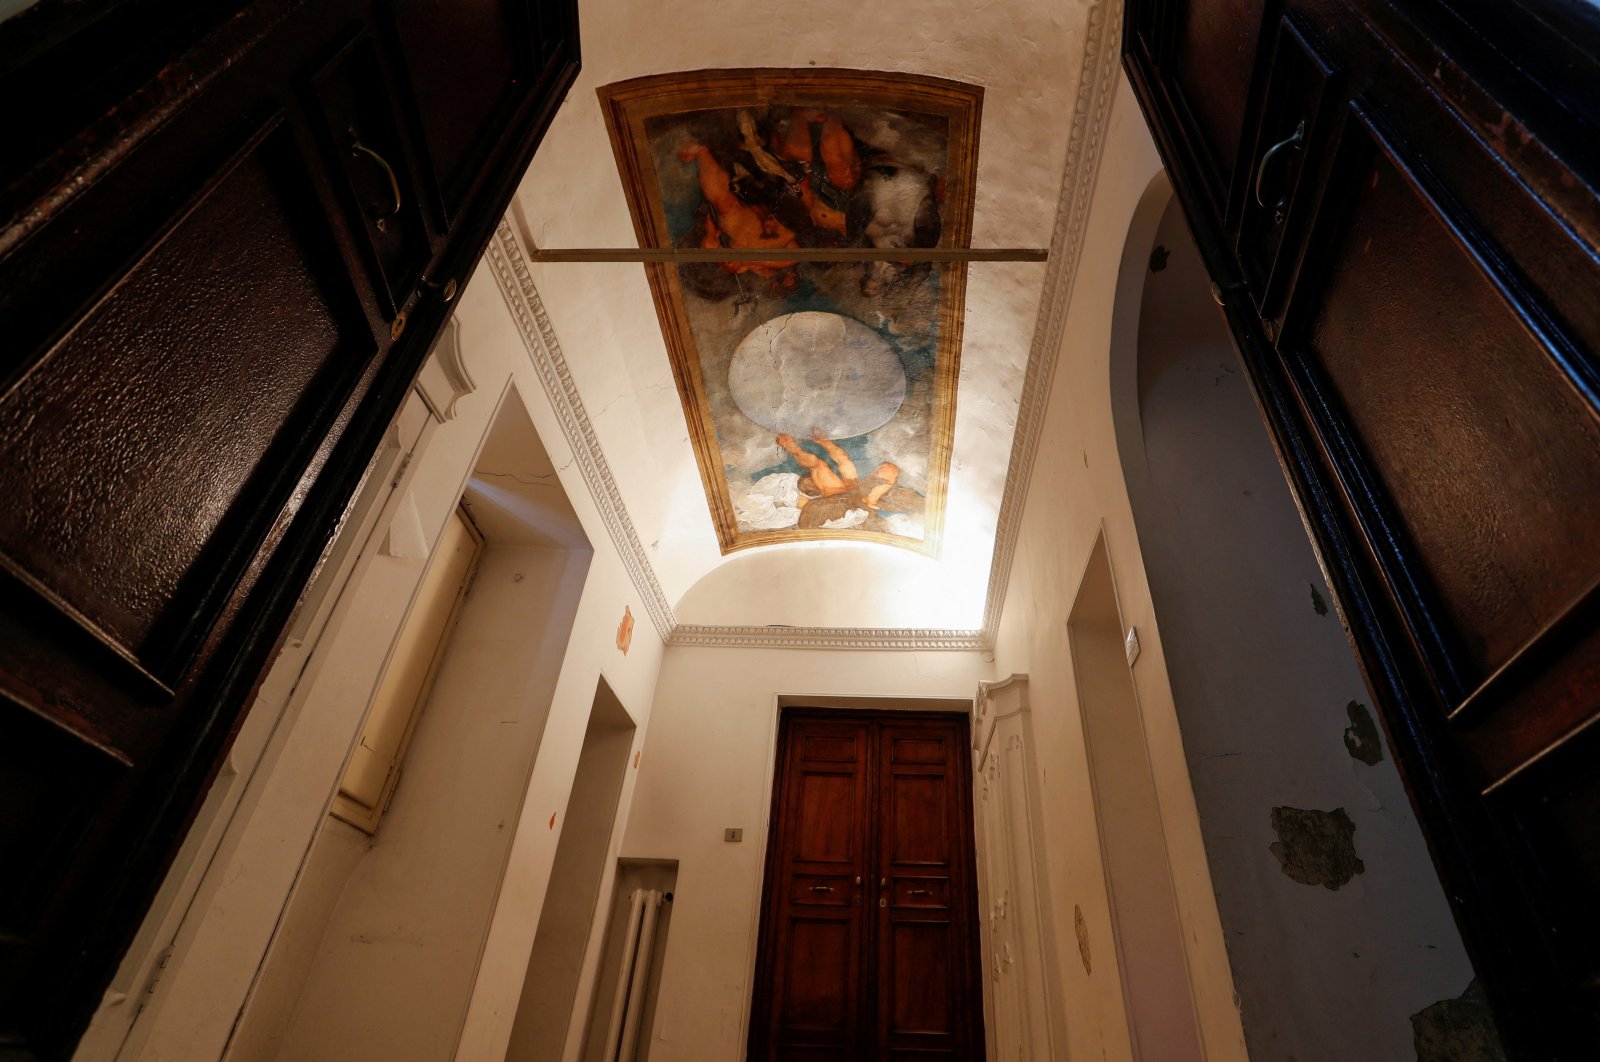 Vila Roma dengan mural Caravaggio gagal lelang dengan harga lebih dari 0 juta